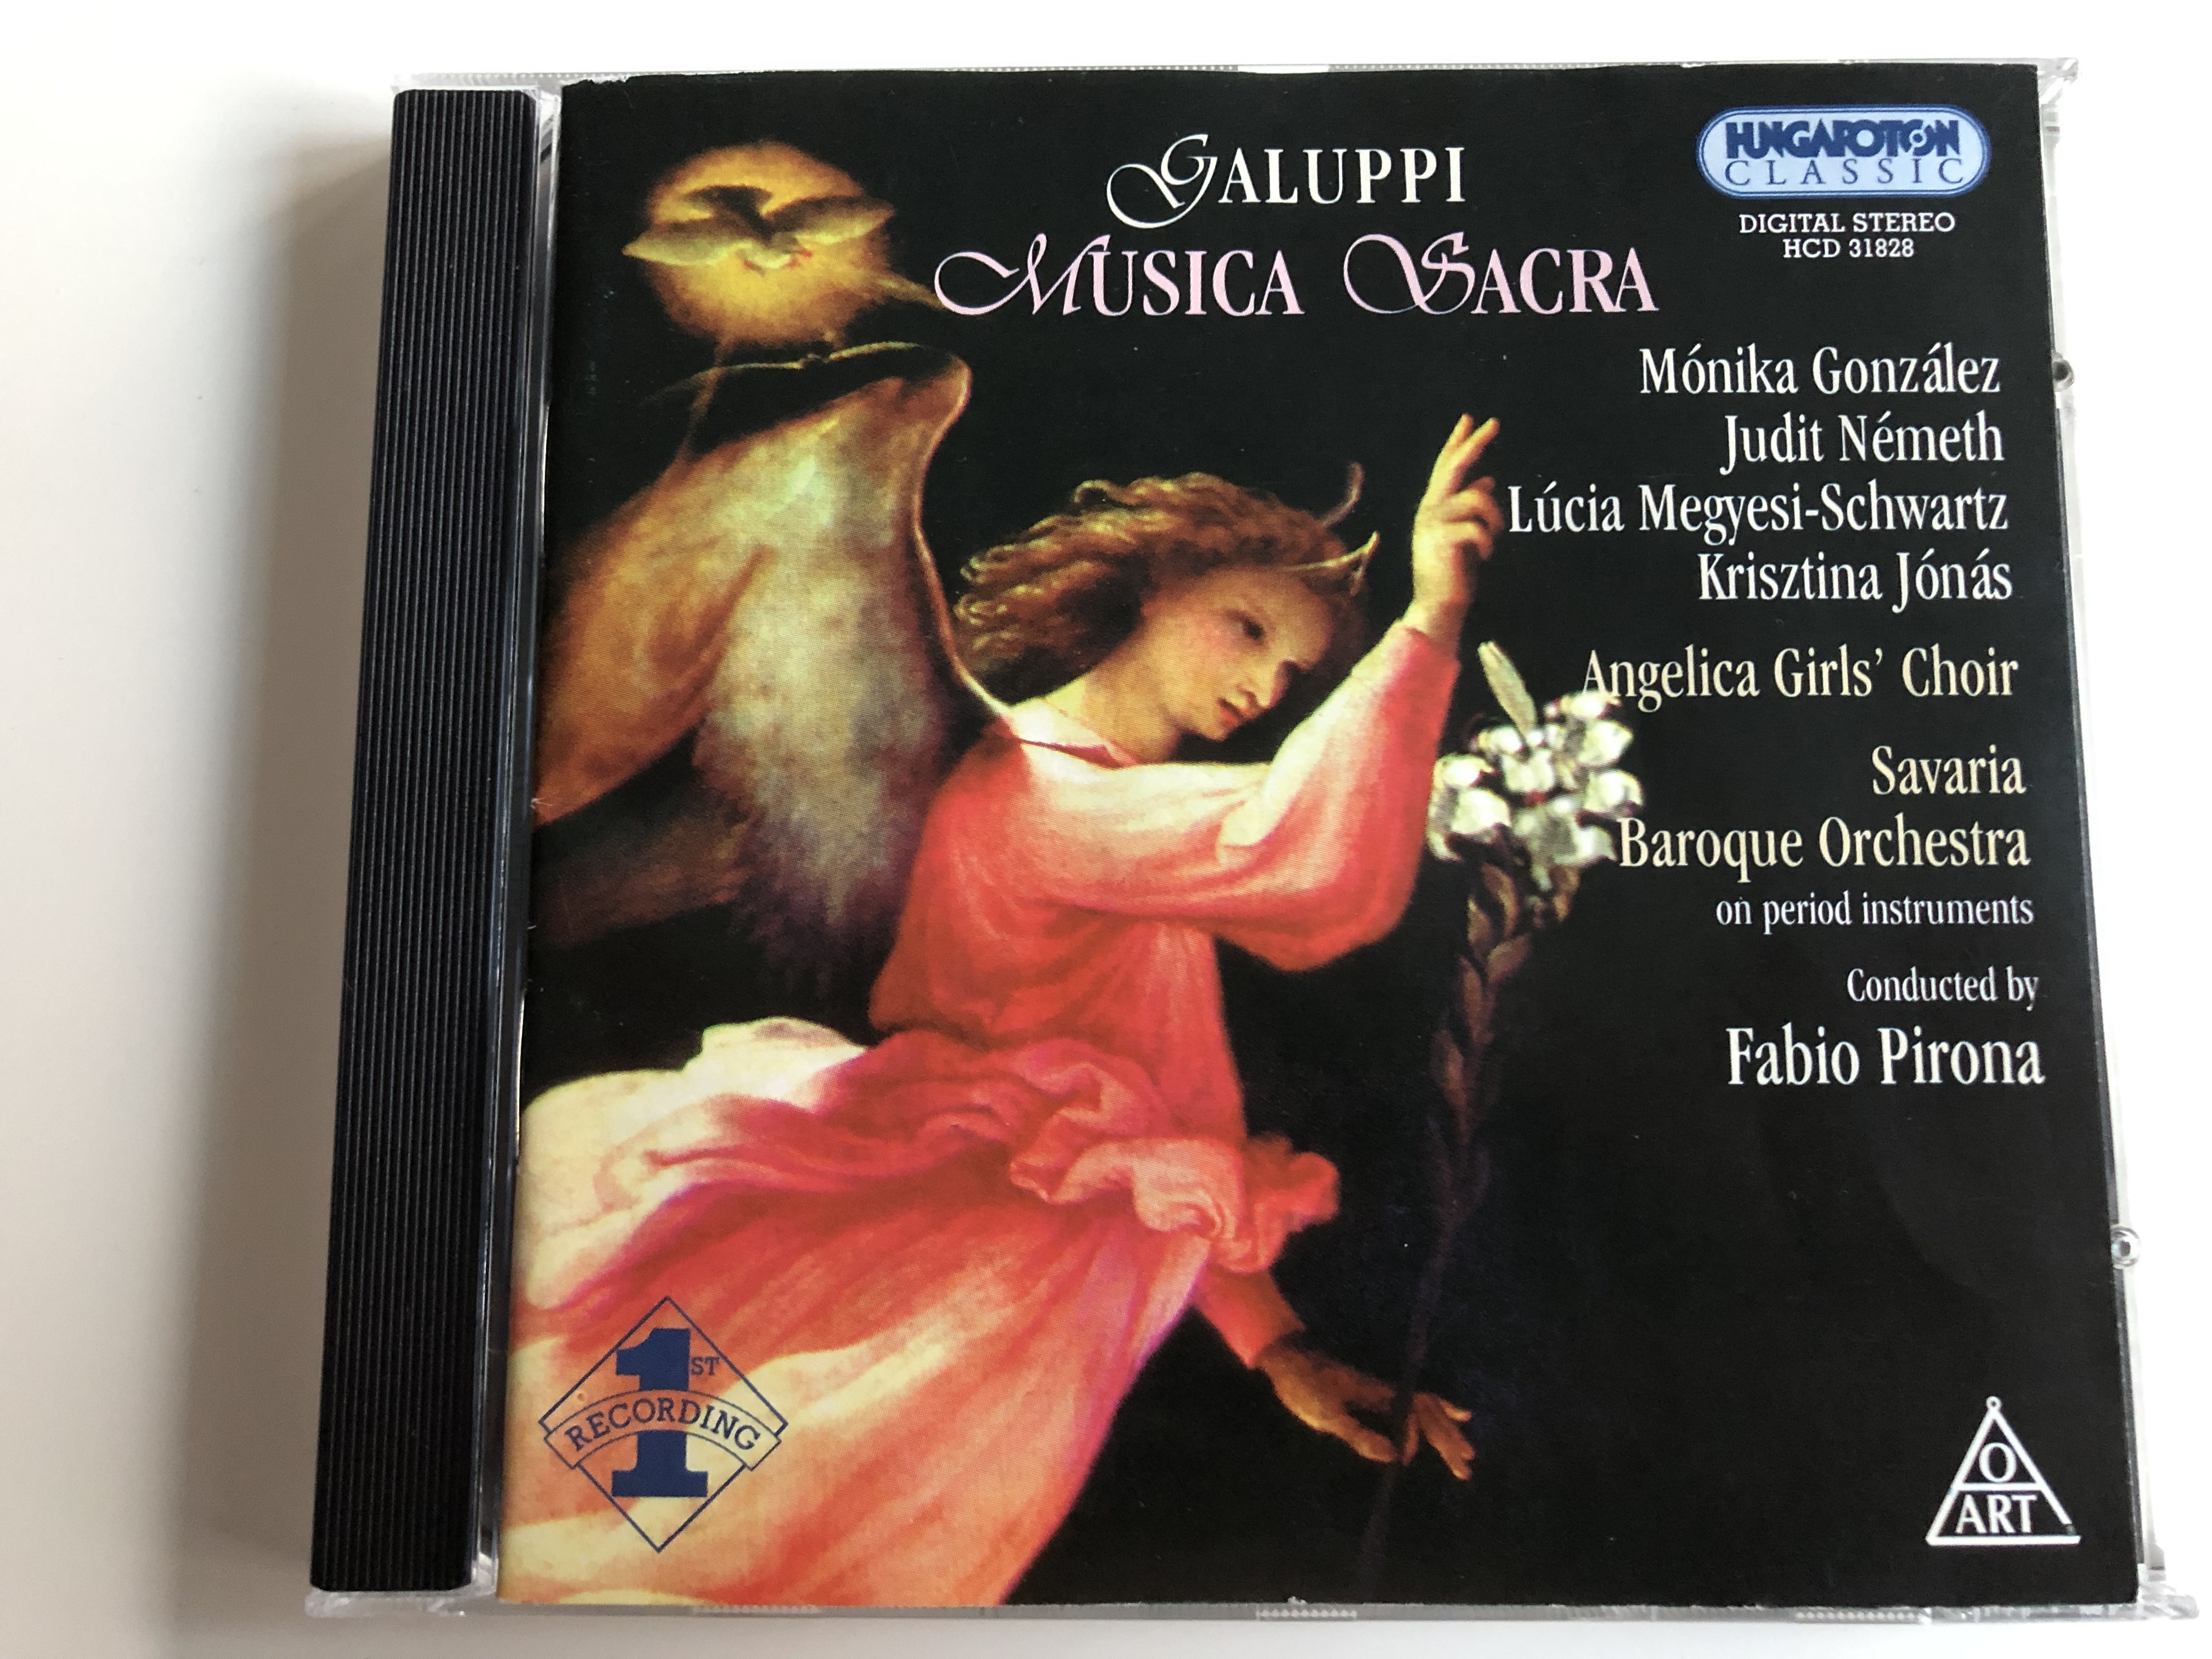 galuppi-musica-sacra-monika-gonzales-judit-nemeth-lucia-megyesi-schwartz-krisztina-jonas-angelica-girls-choir-savaria-baroque-orchestra-on-period-instruments-conducted-by-fabio-pirona-h-1-.jpg